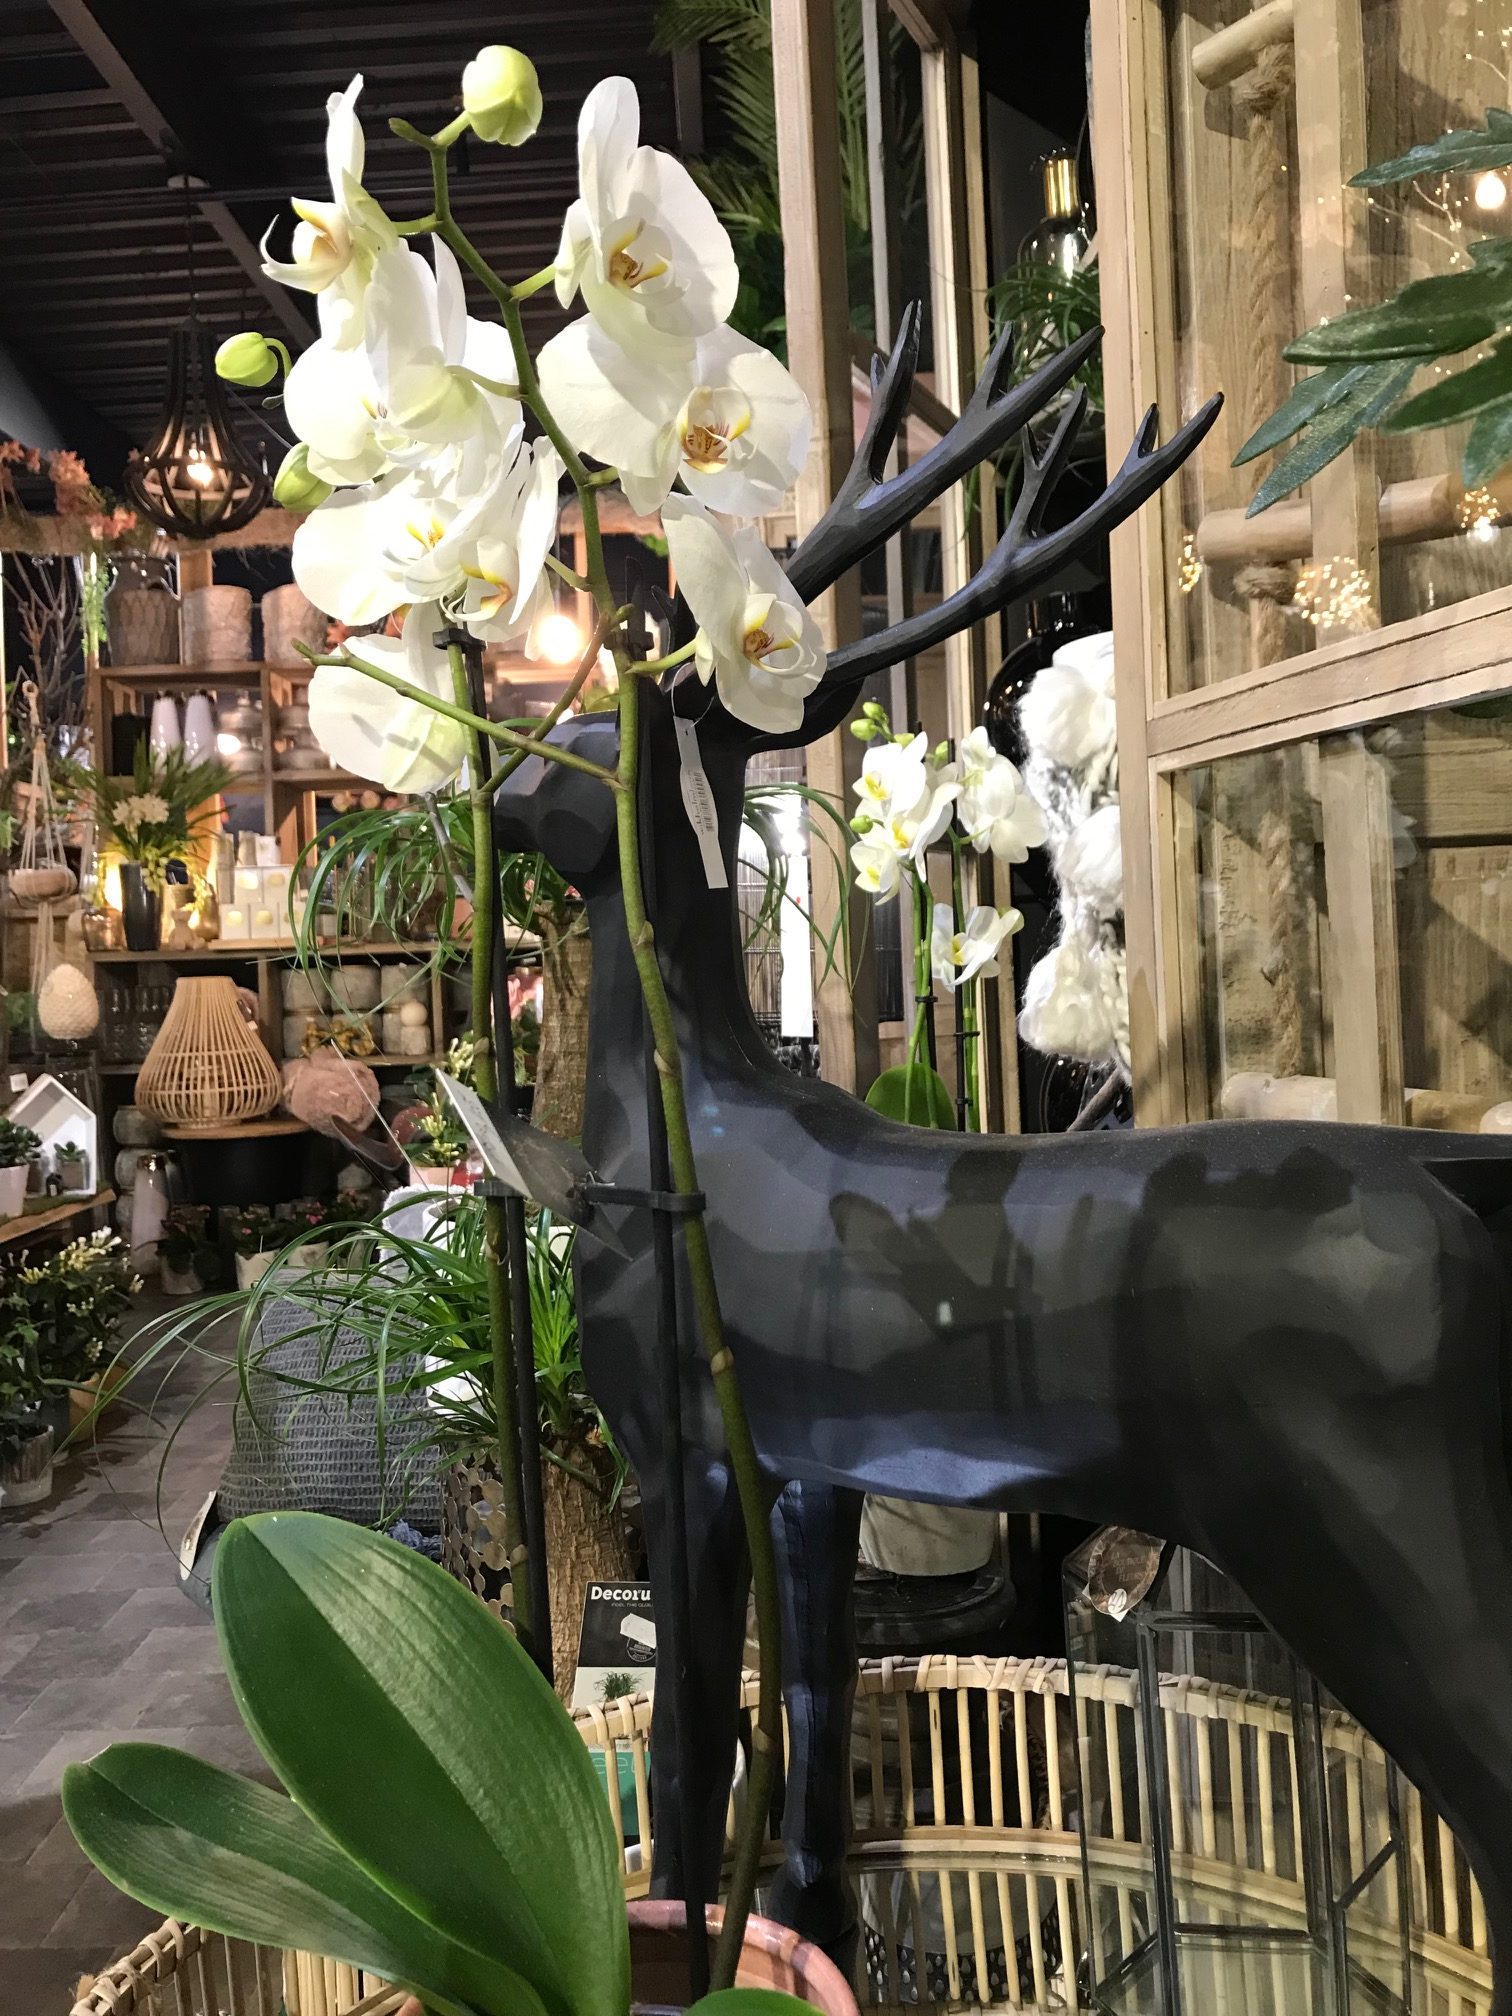 Plante d'intérieur - orchidée blanche et son cache-pot blanc - plante d' intérieur fleurie 45cm